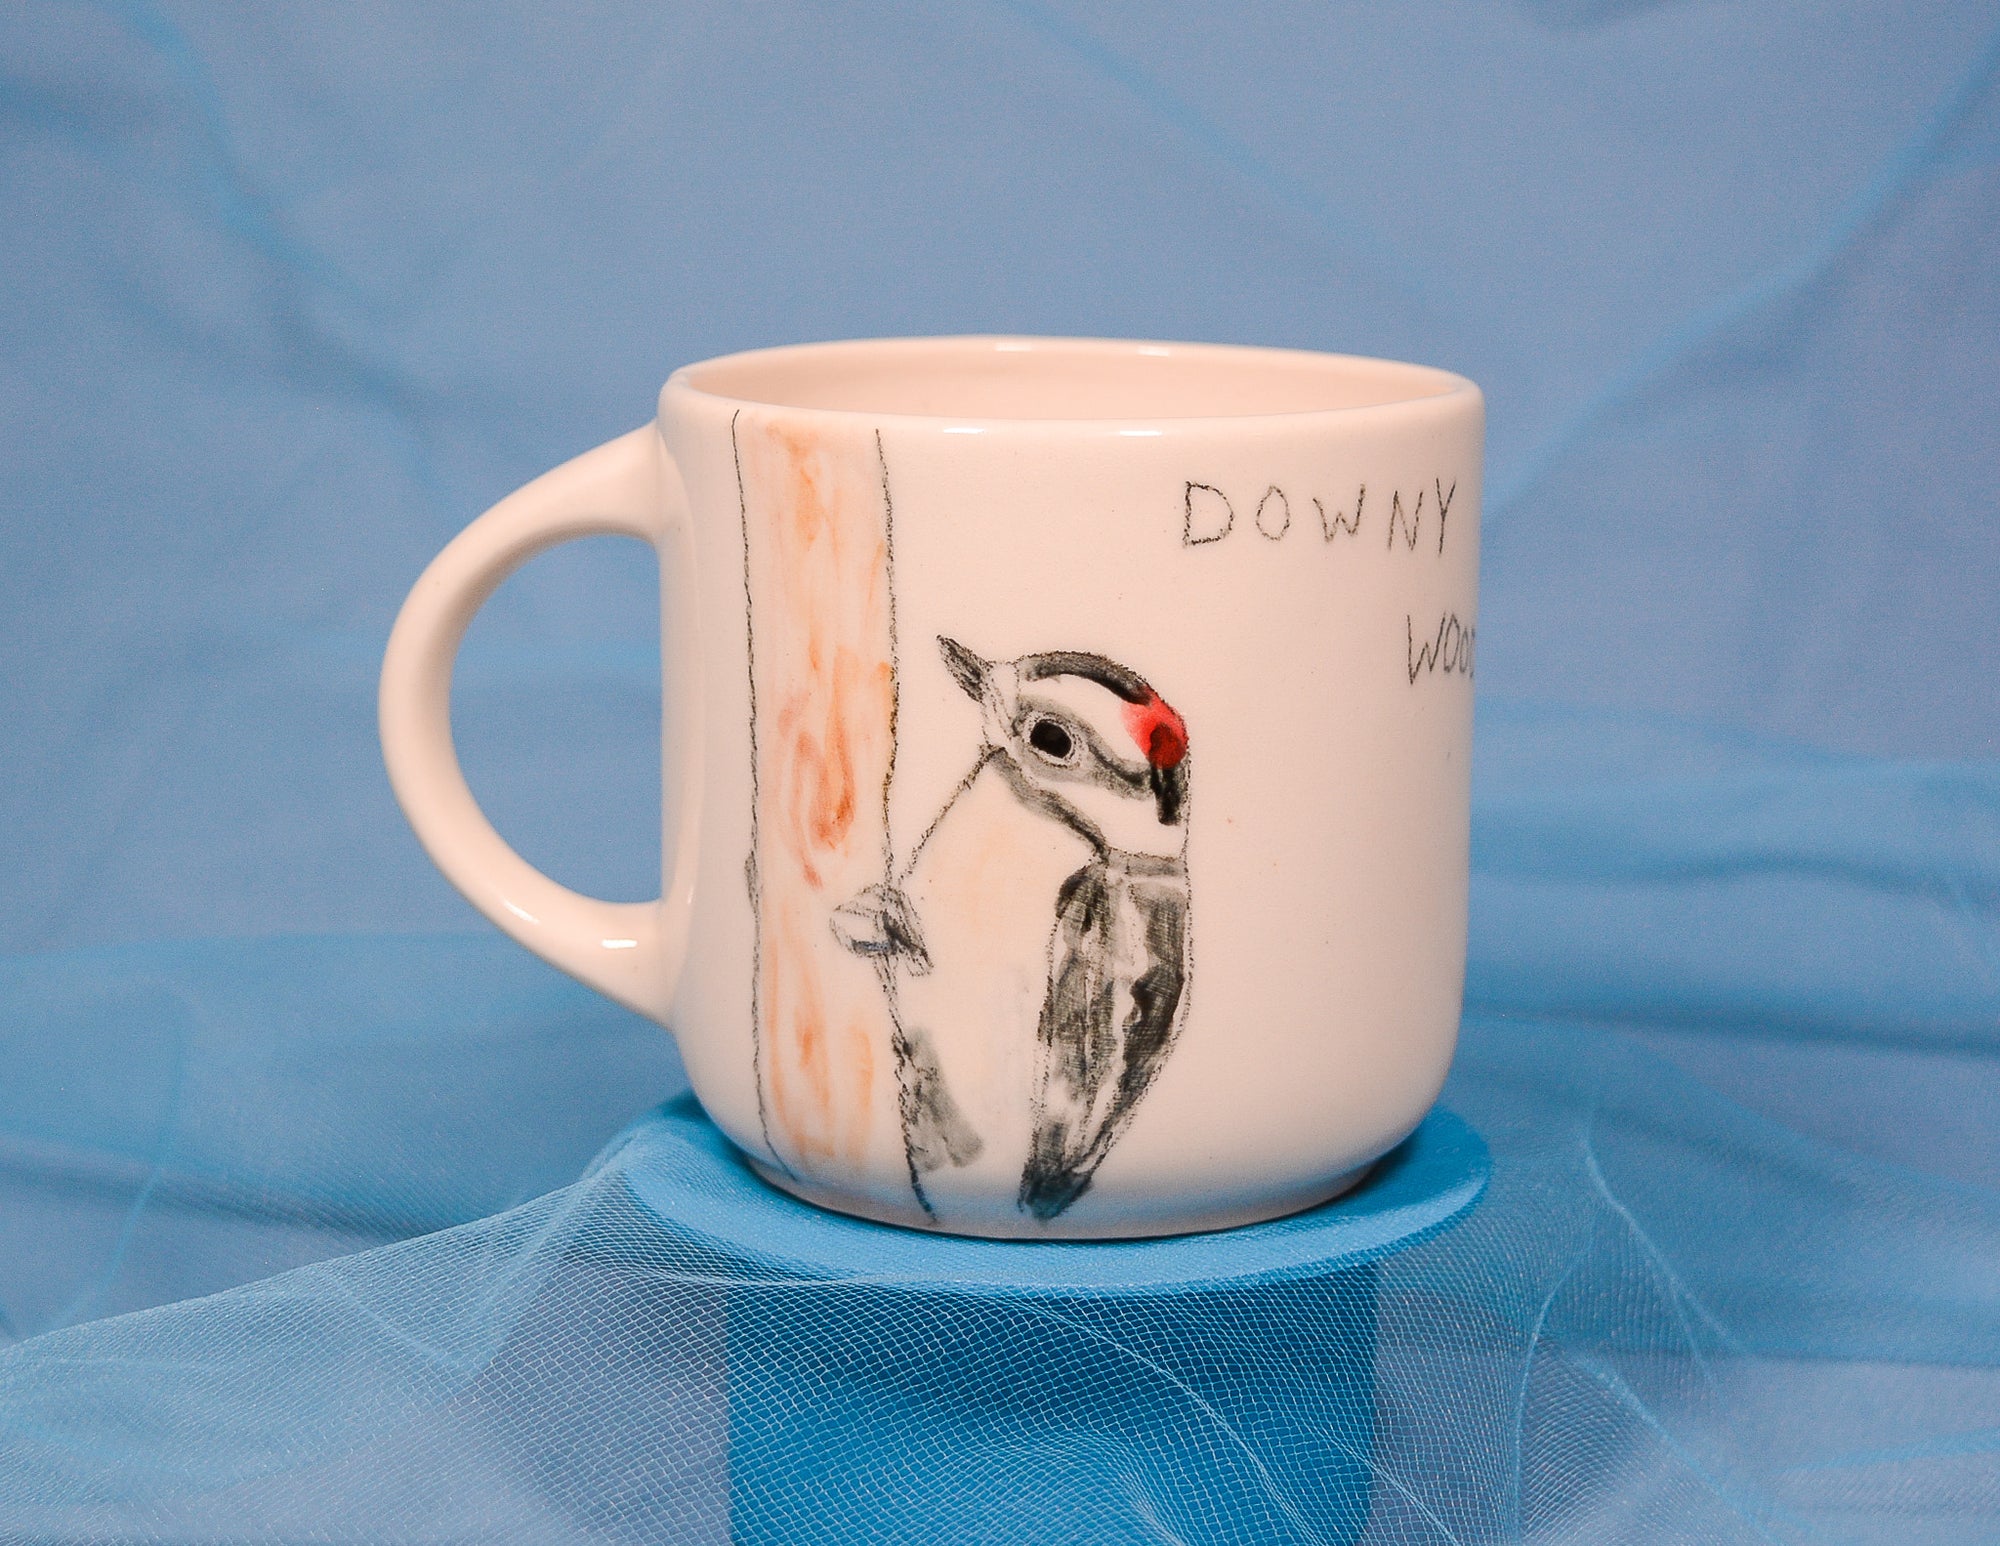 Downy Woodpecker Mug